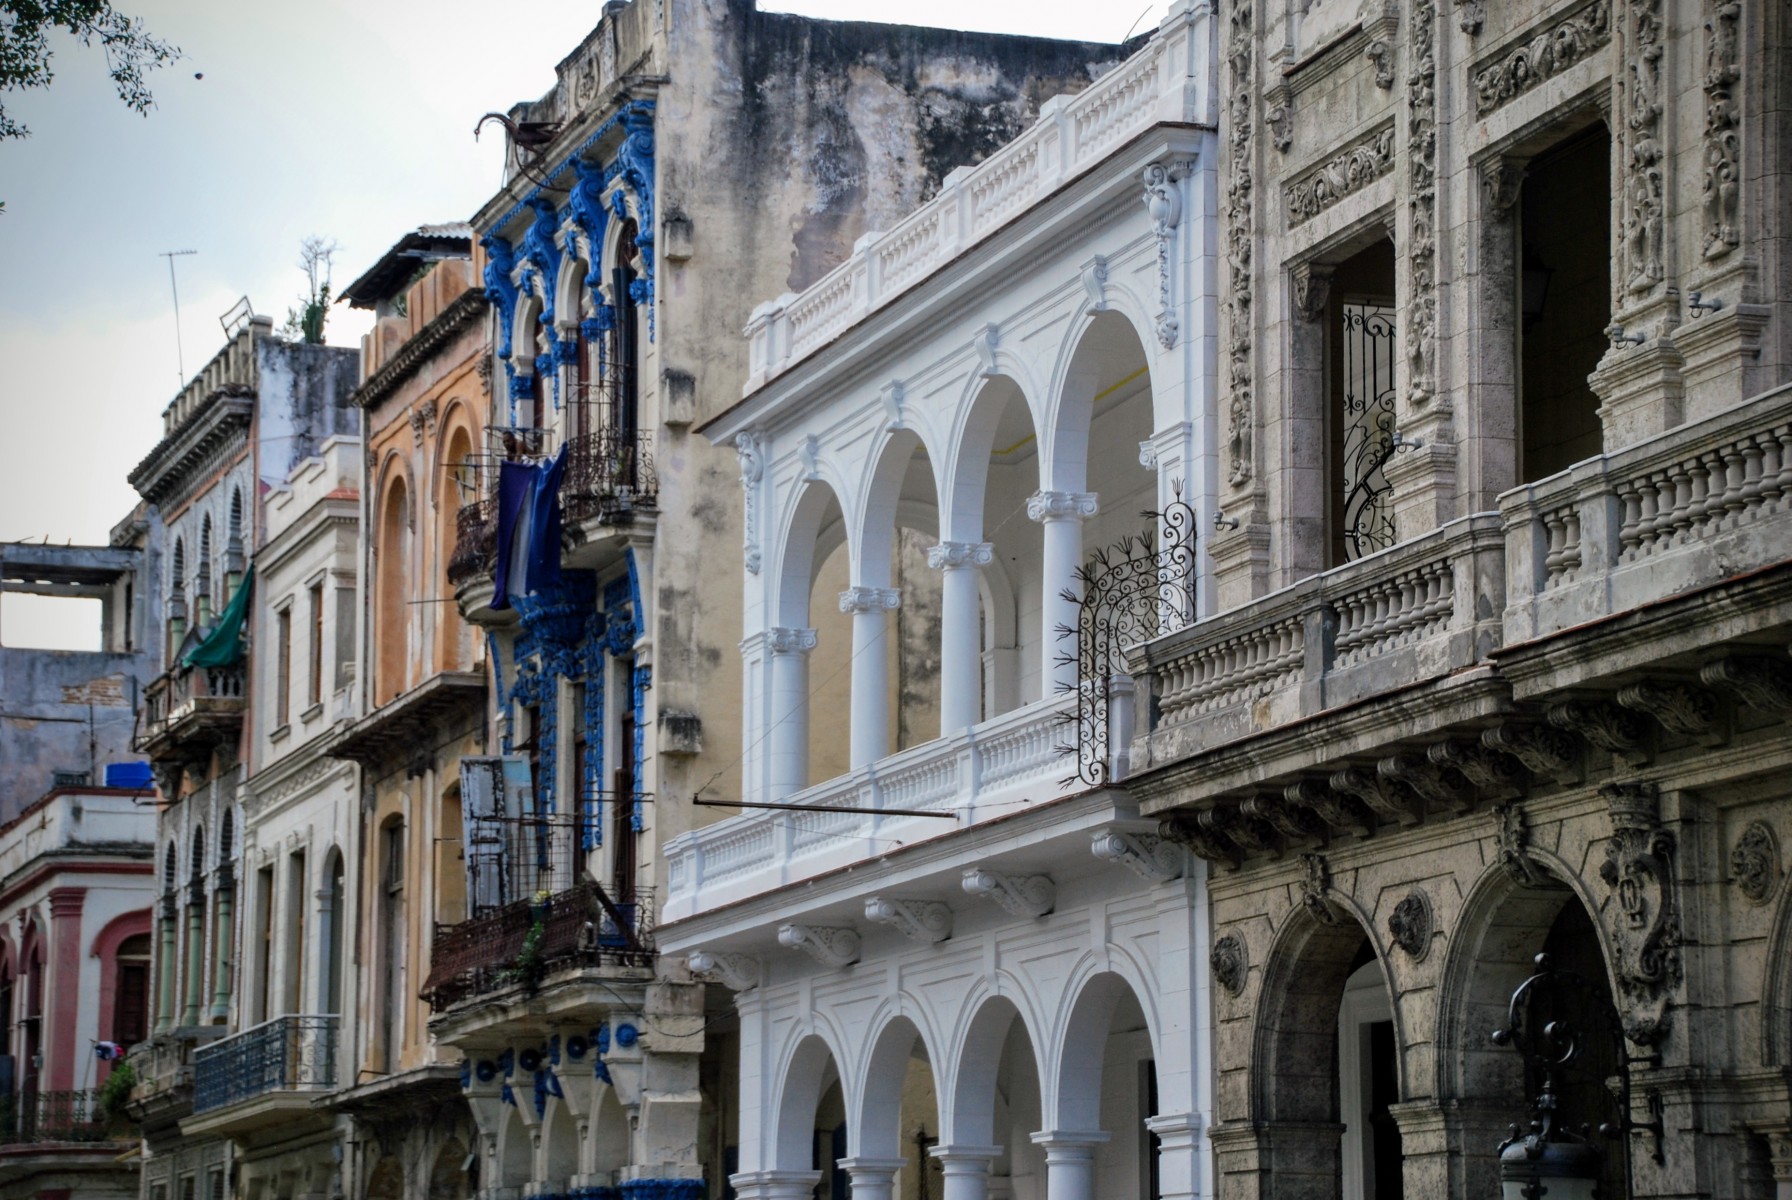 La Habana - Paseo del Prado